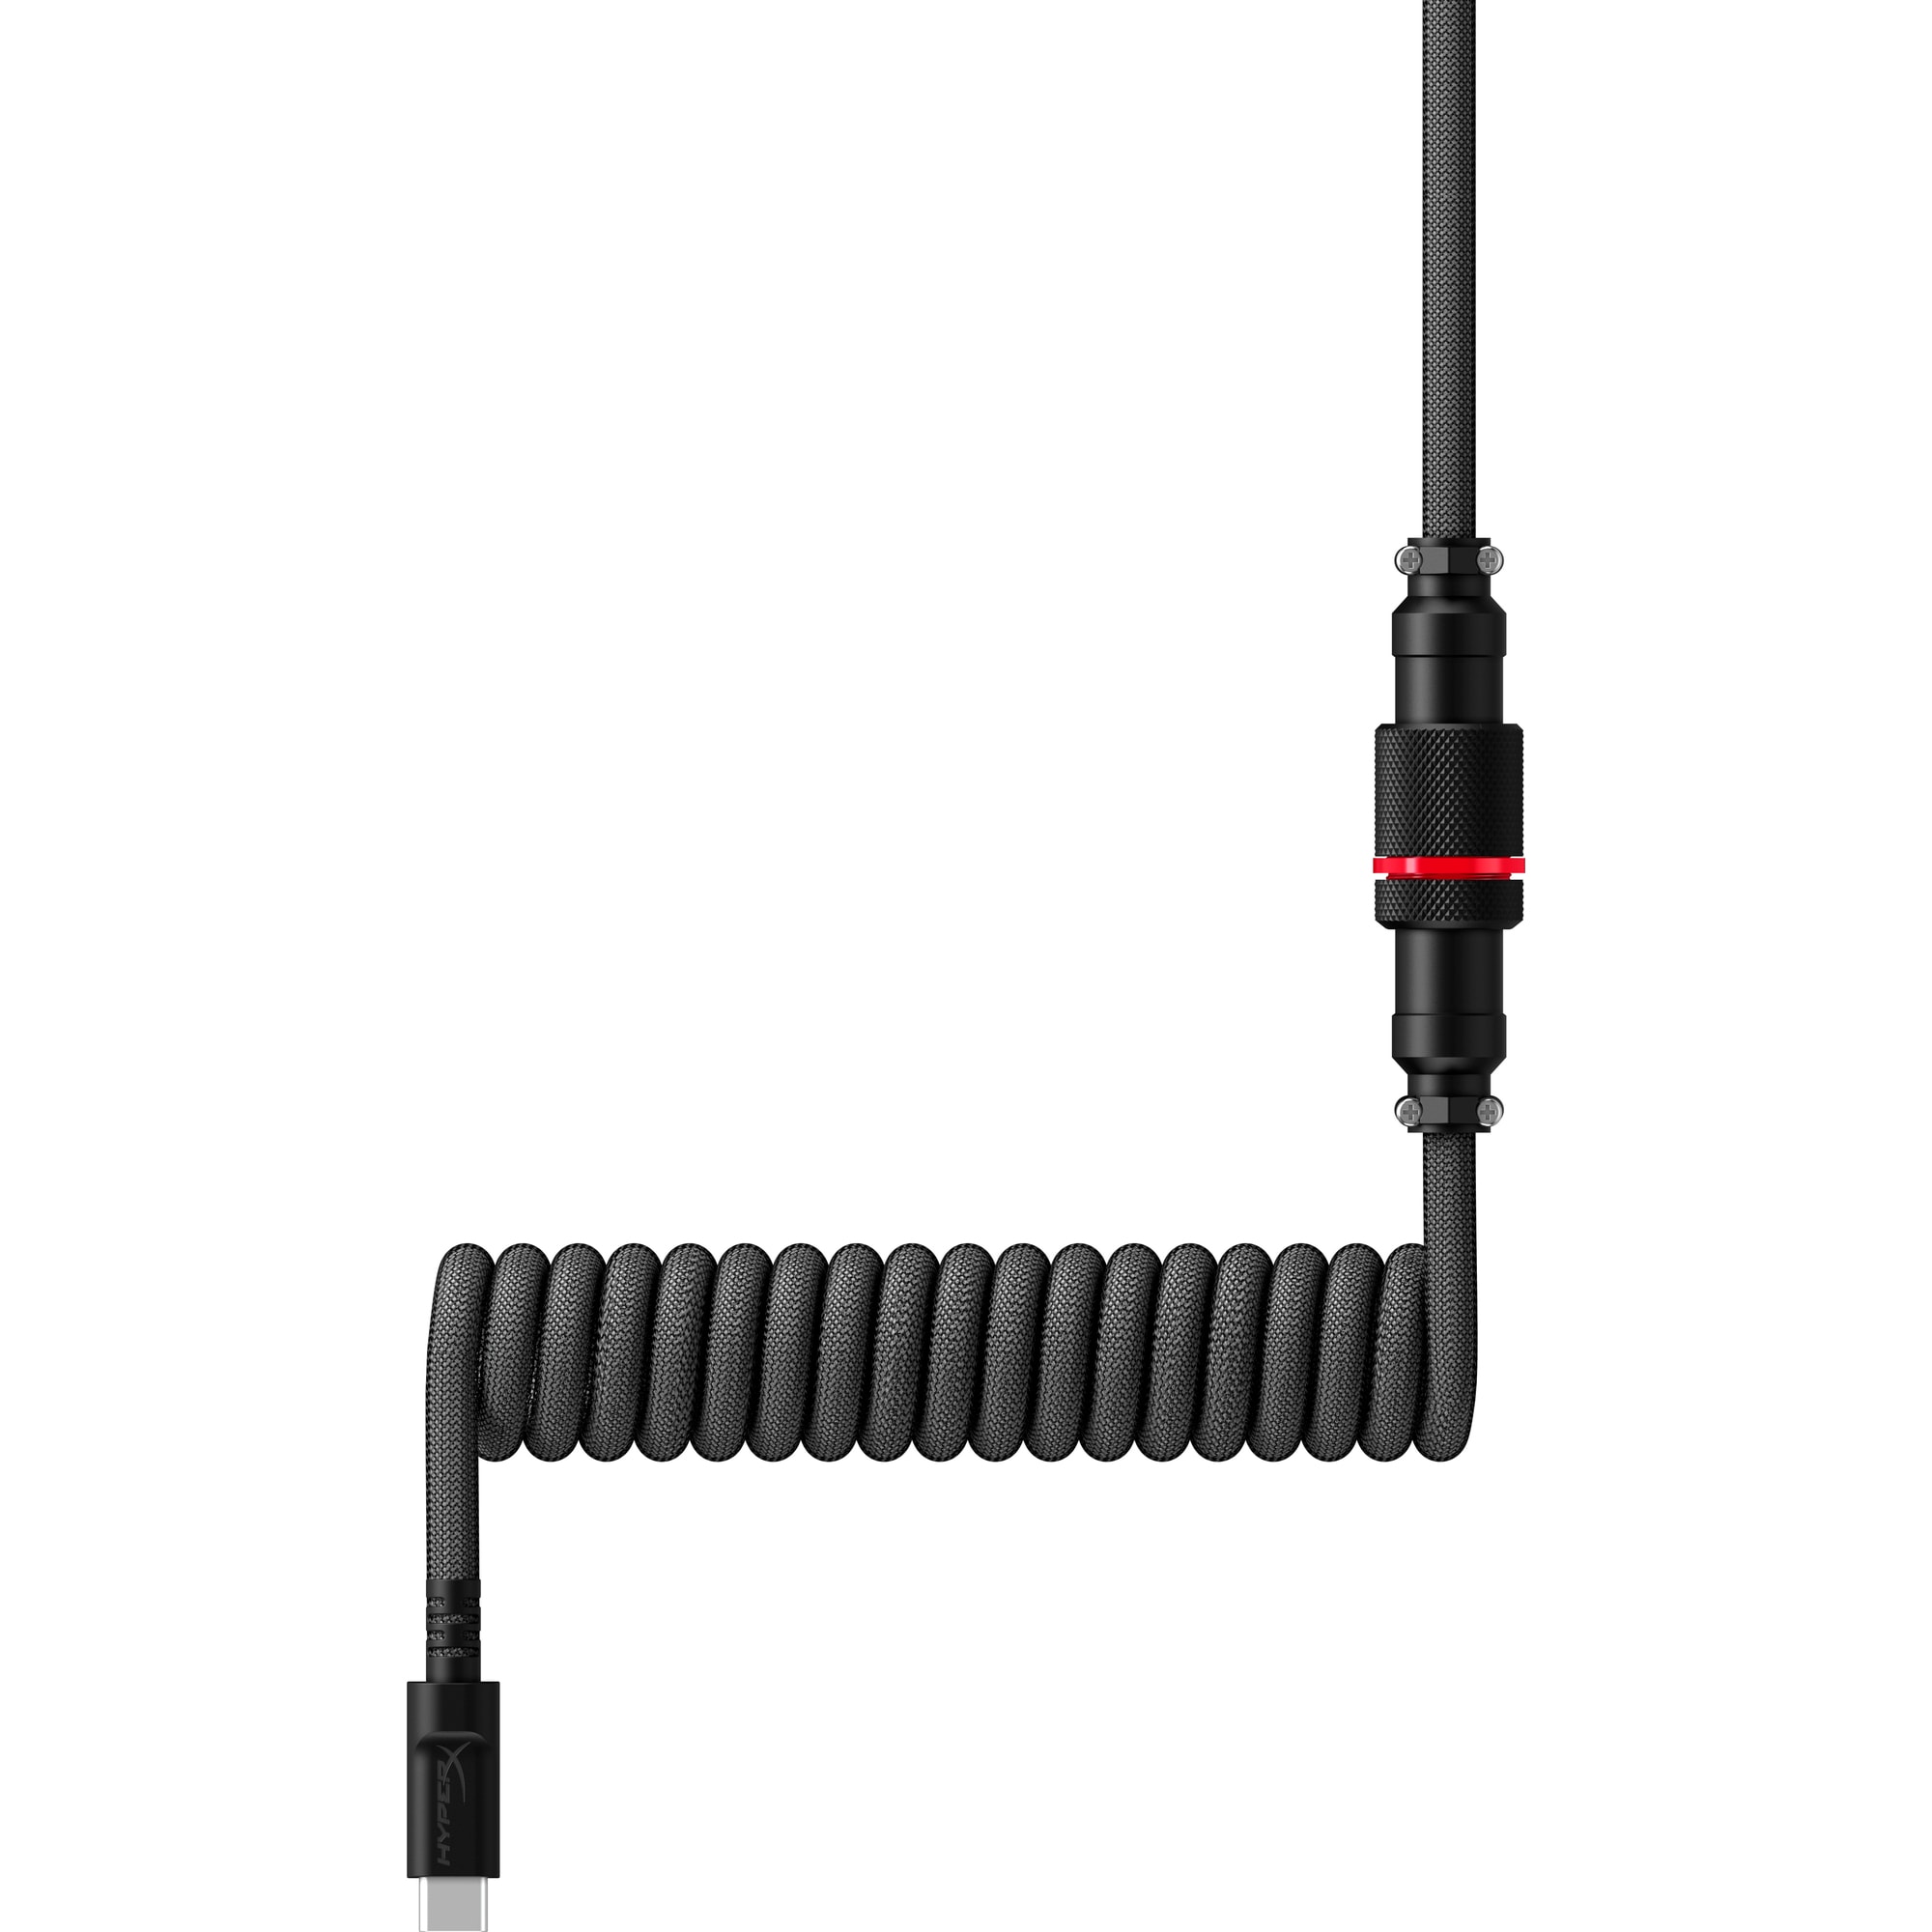 HyperX USB-C Coiled Cable Gray-Black - Příslušenství ke klávesnici3 